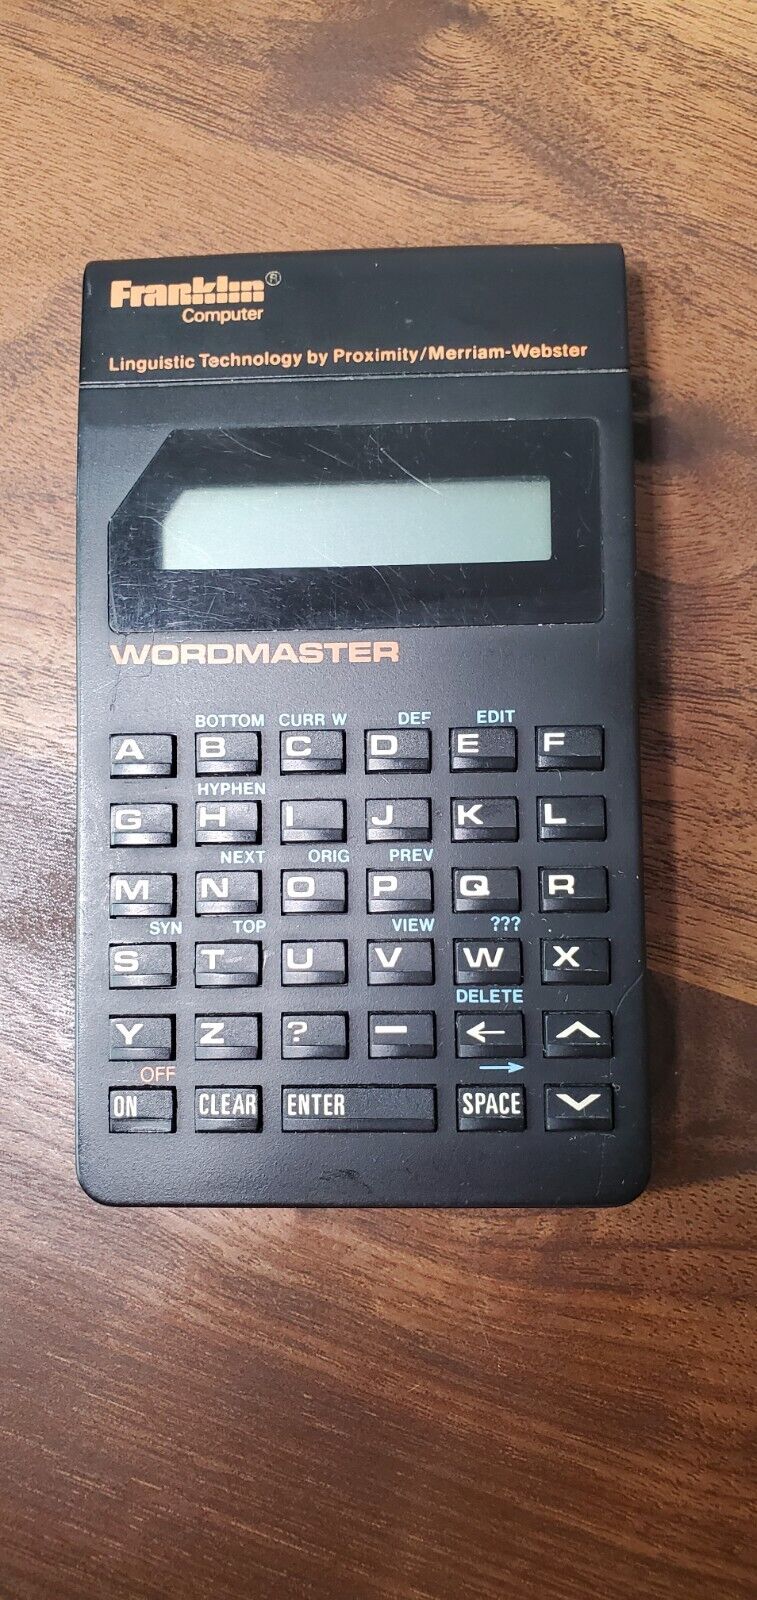 1987 Franklin Wordmaster Computer WM-1200 MULTI Function Working Condition 